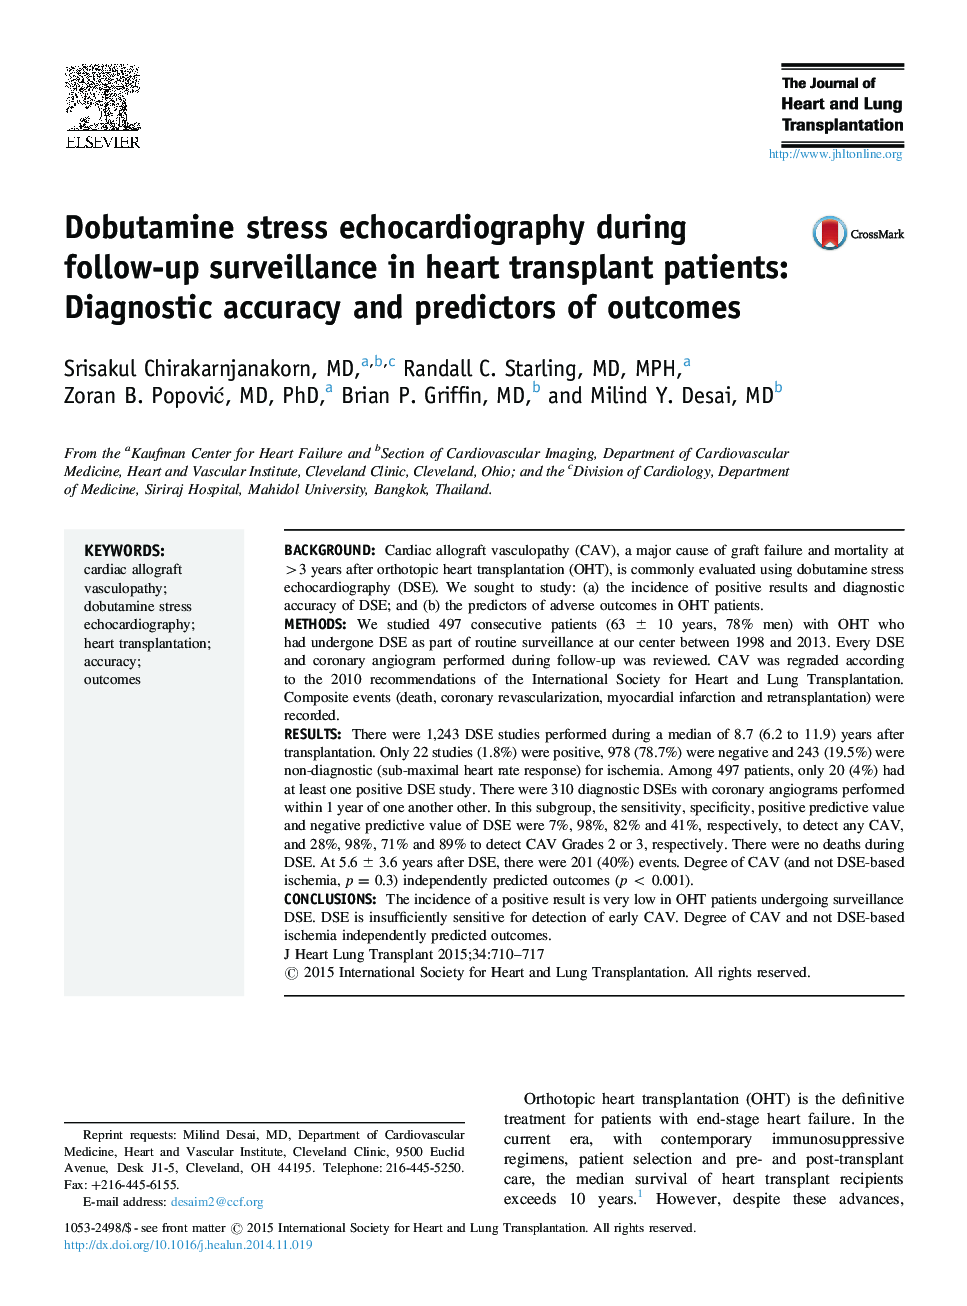 اکوکاردیوگرافی استرس دابوتین در طی پیگیری در بیماران پیوند قلب: دقت تشخیصی و پیش بینی نتایج 